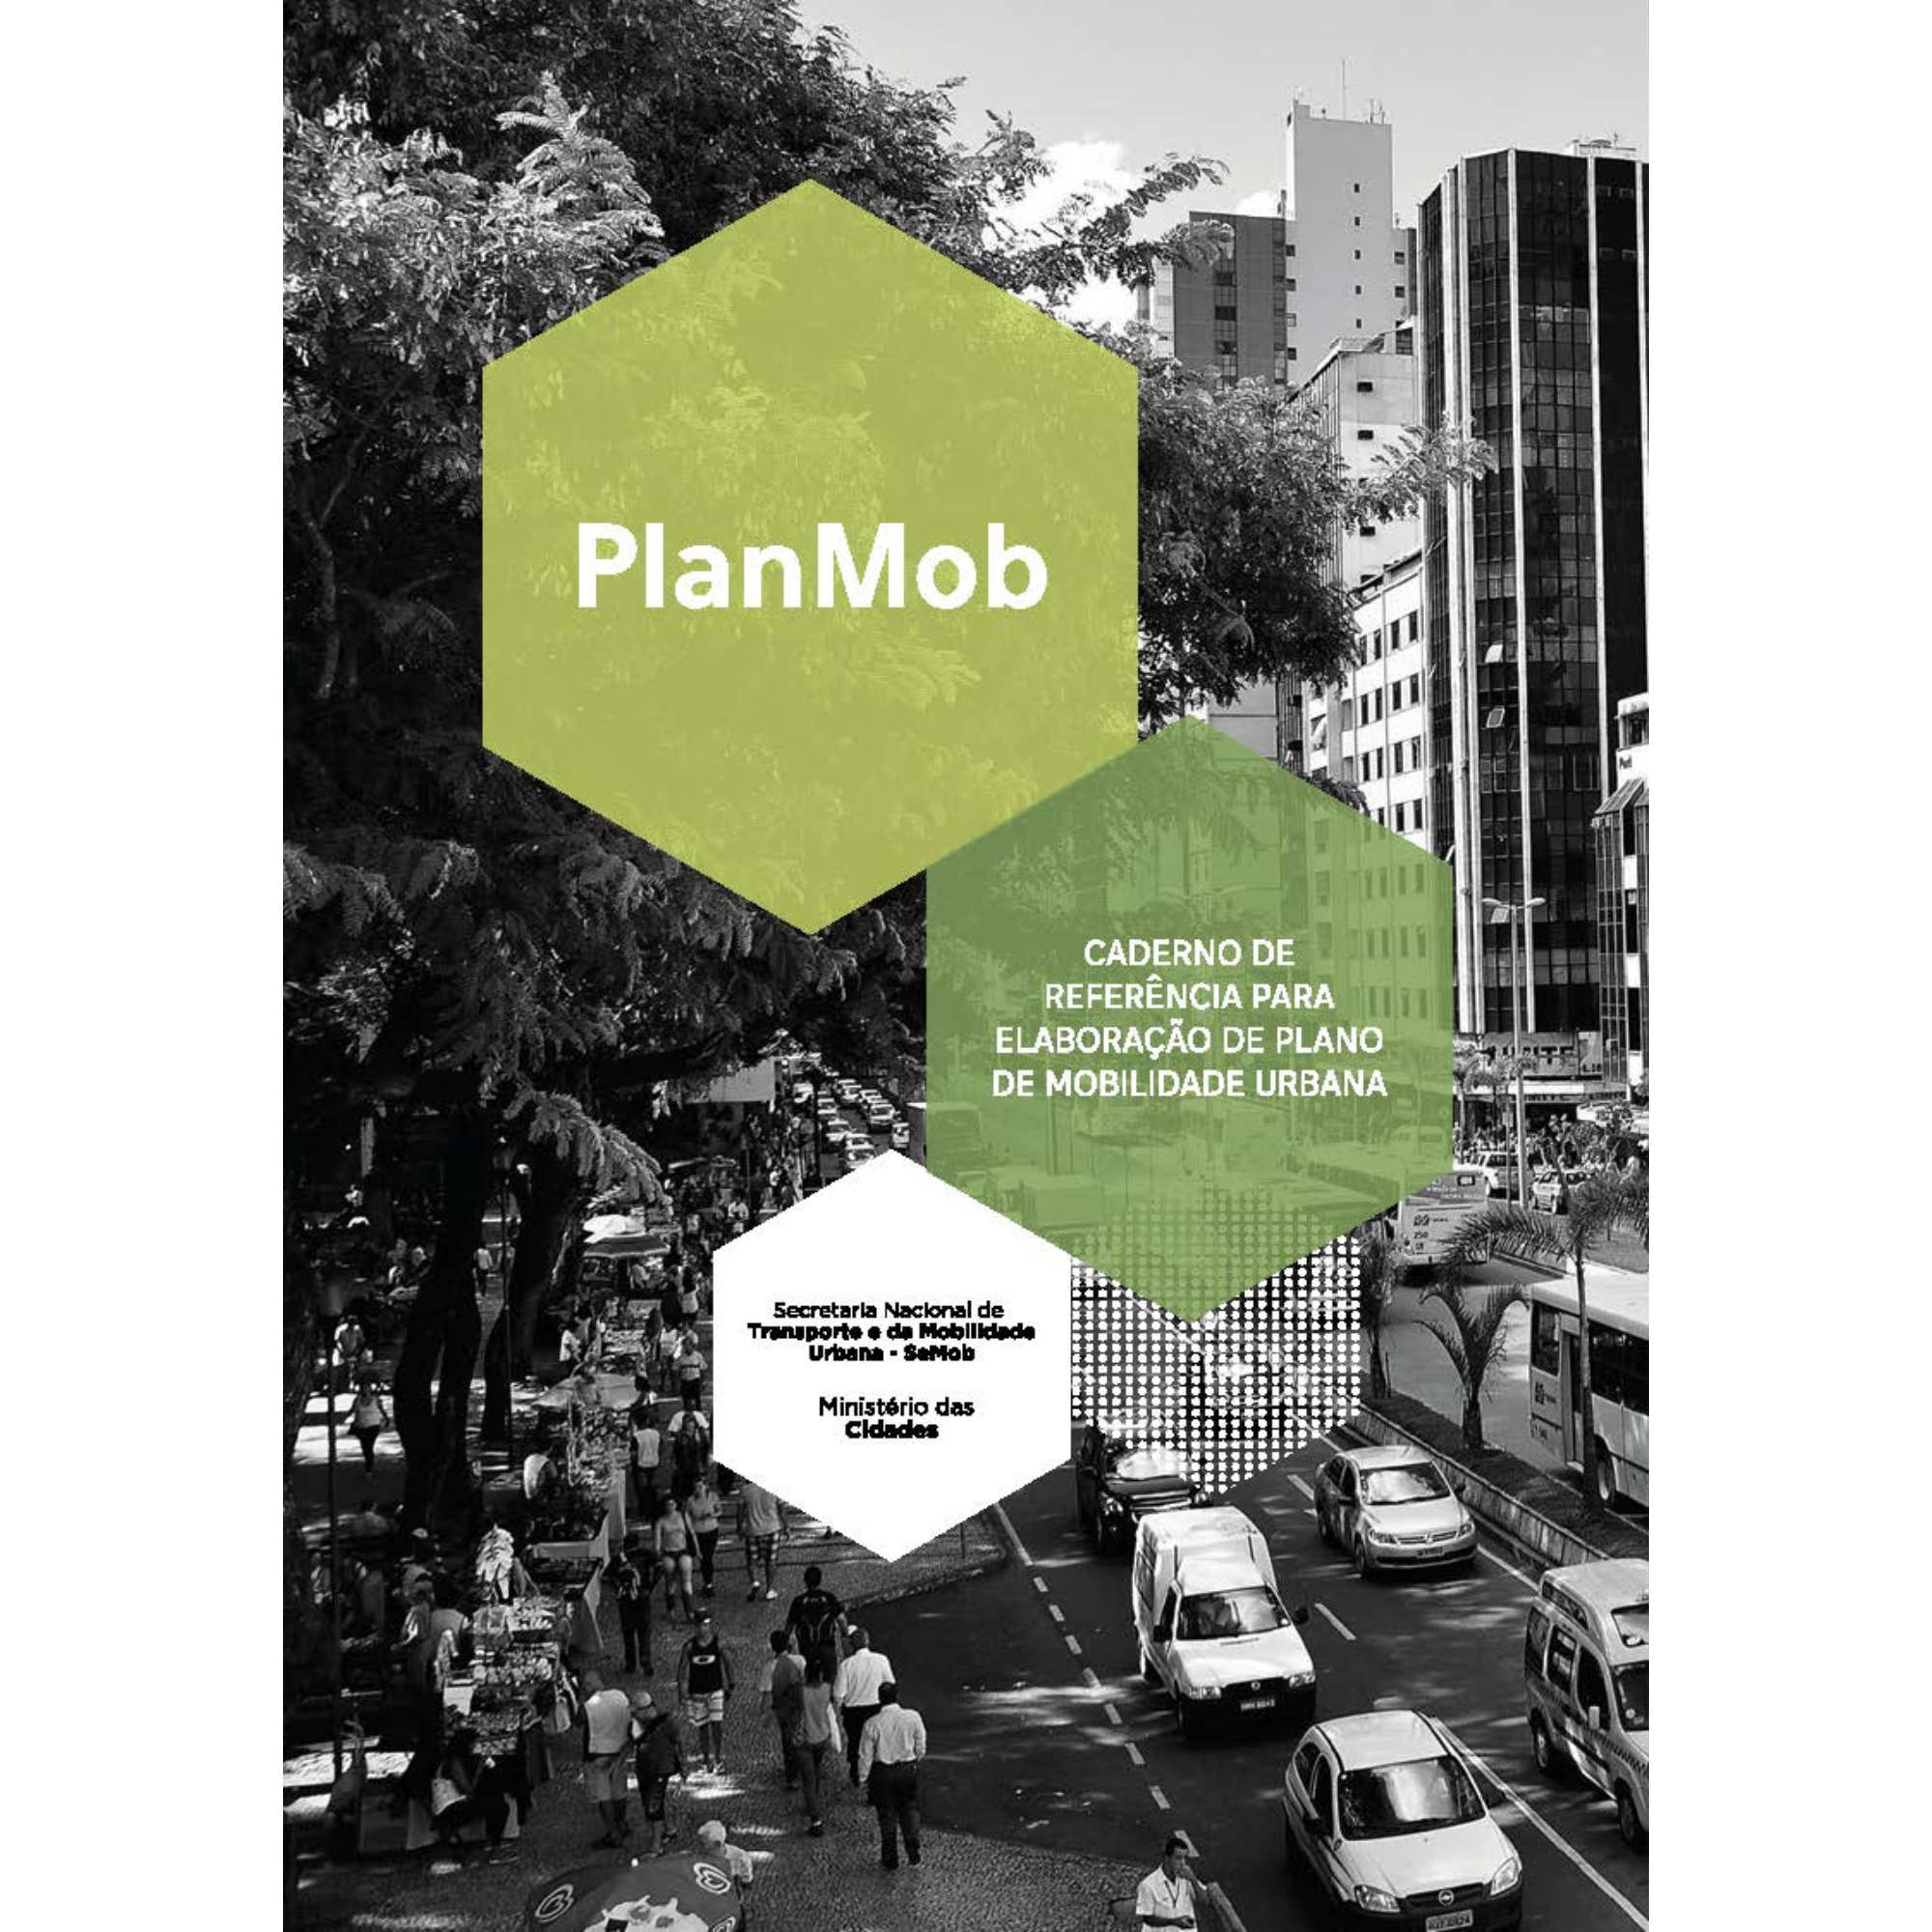 PlanMob – Caderno de Referência para Elaboração de Plano de Mobilidade Urbana